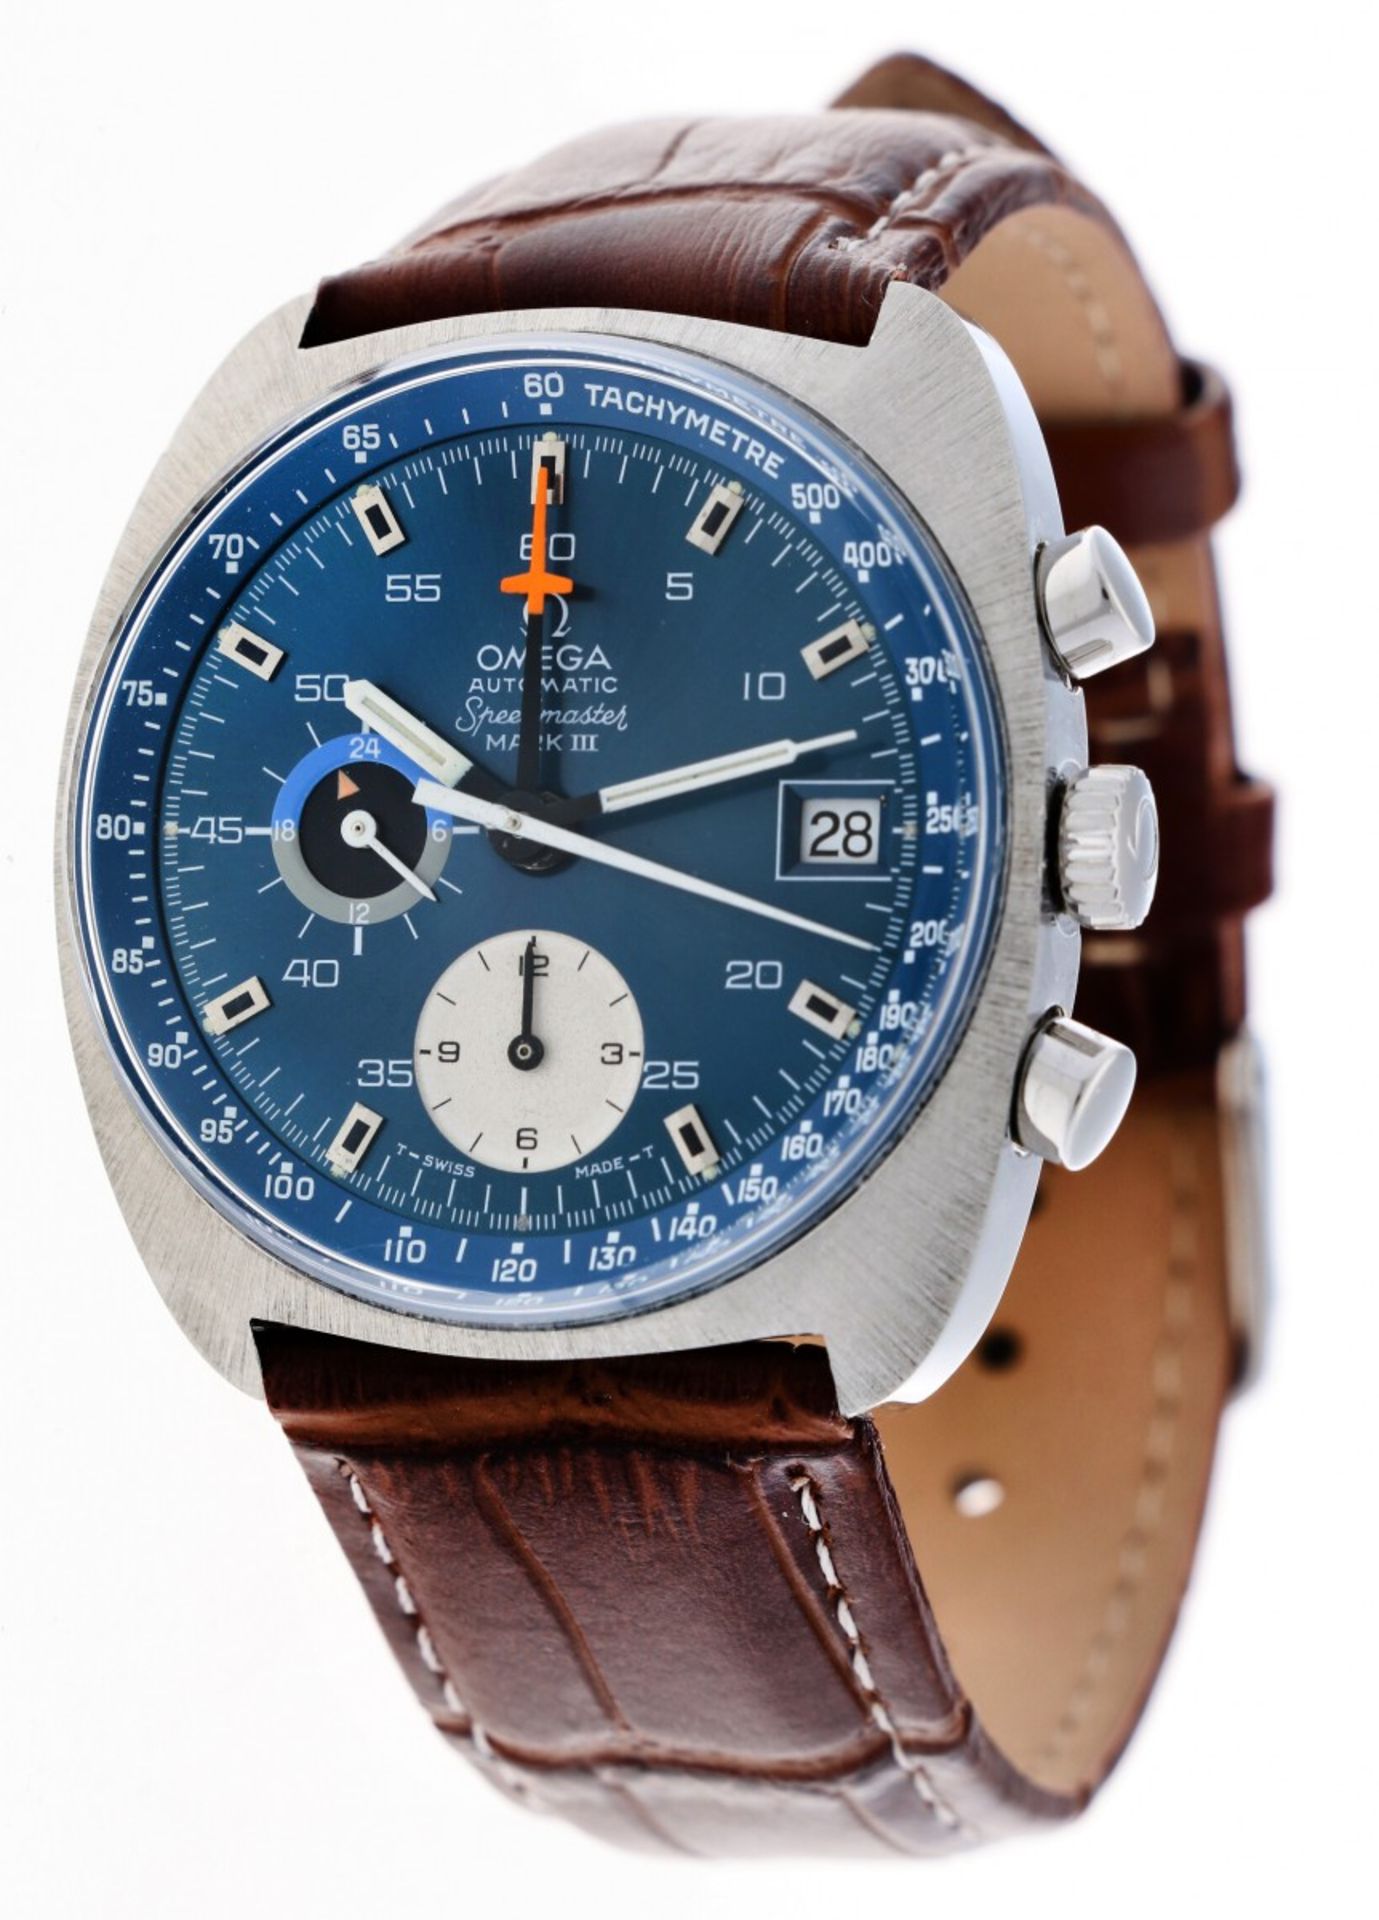 Omega Speedmaster Mark III 176.007 - Men's watch - ca. 1970 - Image 2 of 6